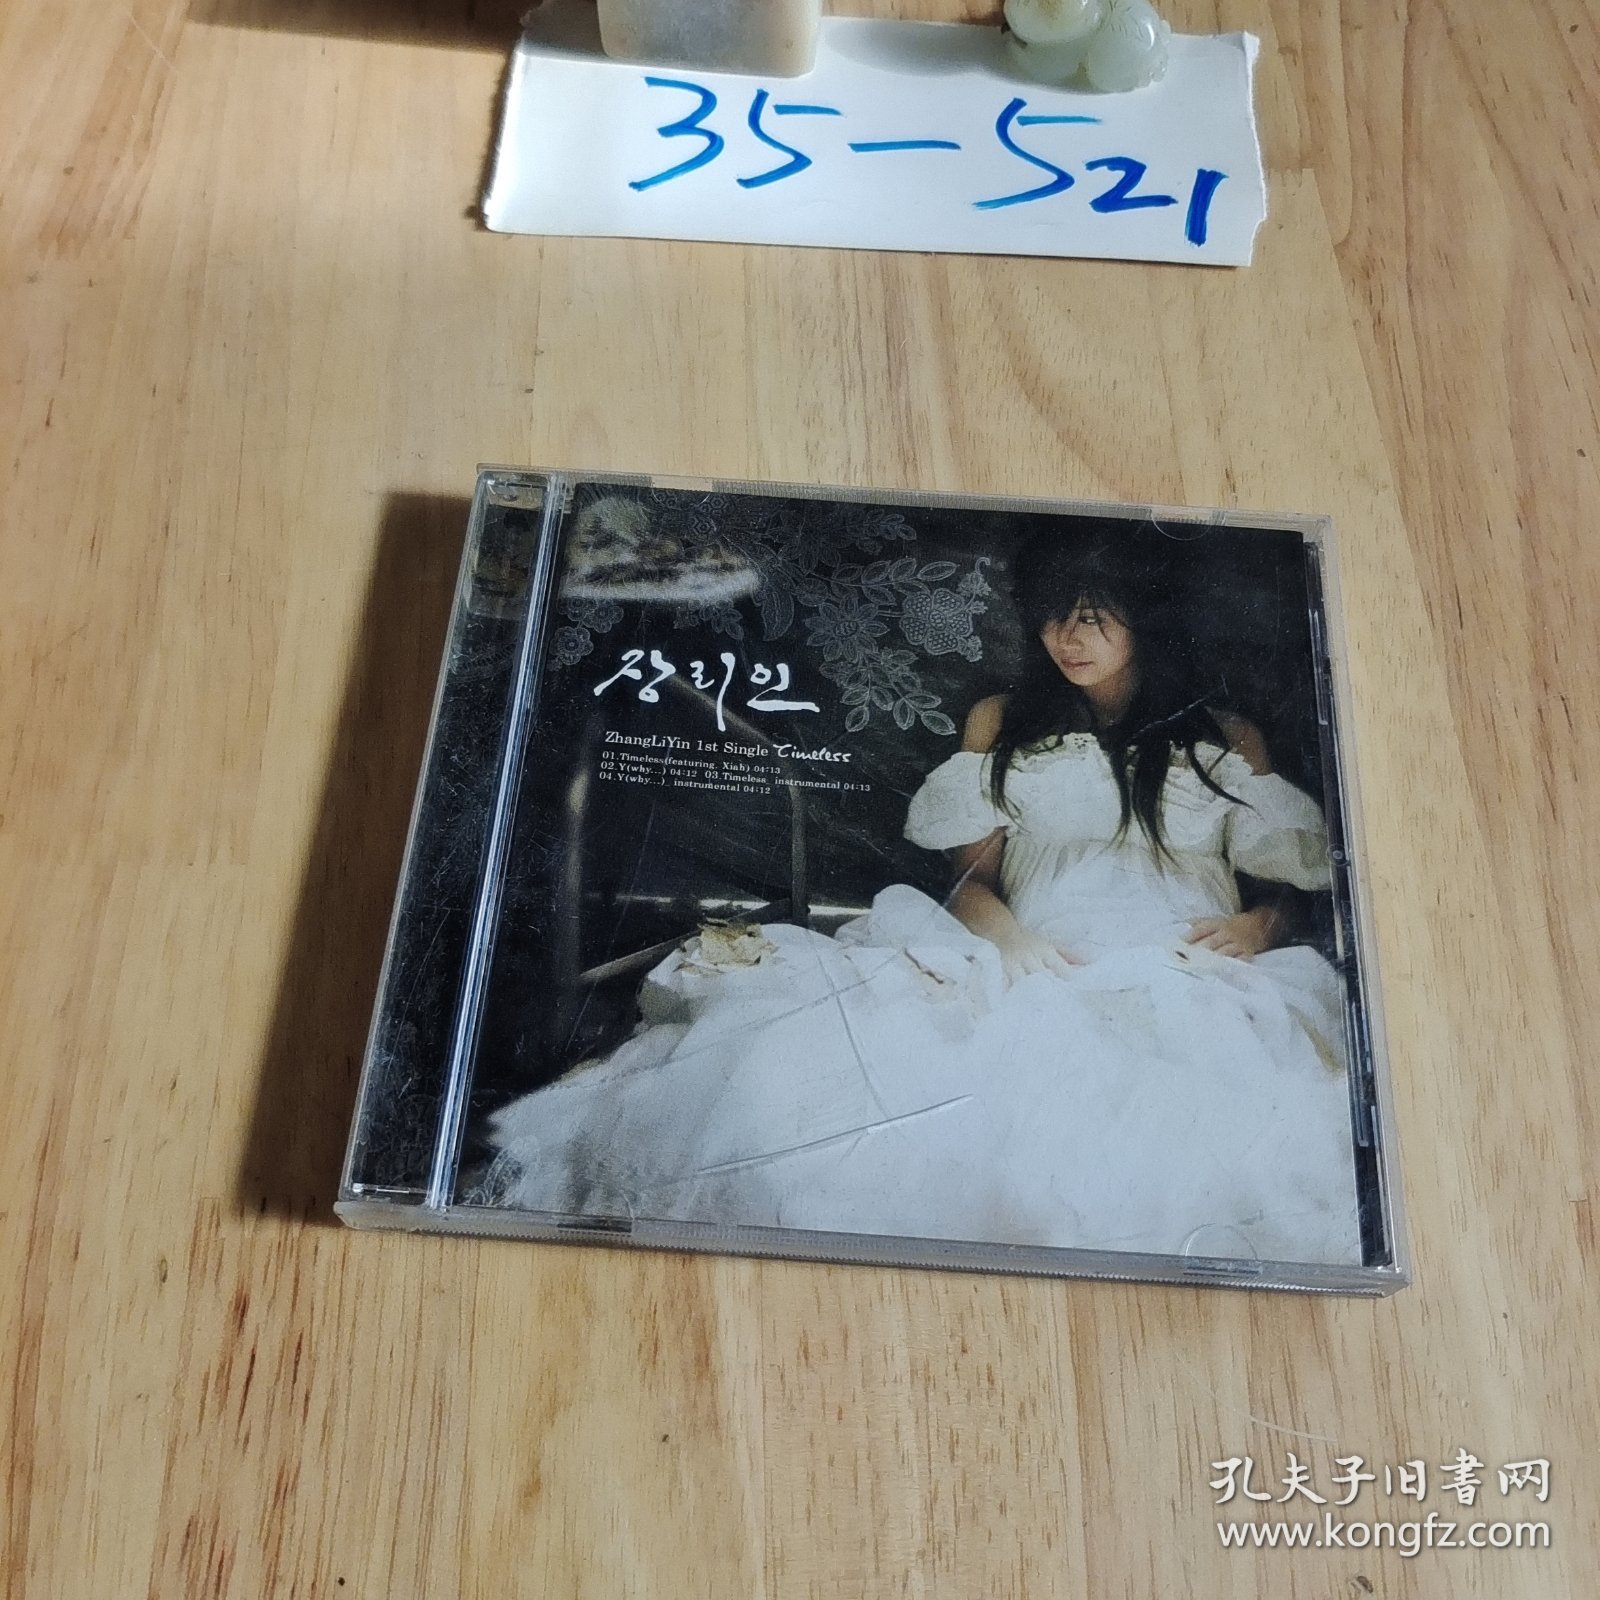 光盘 zhang li yin 1st single